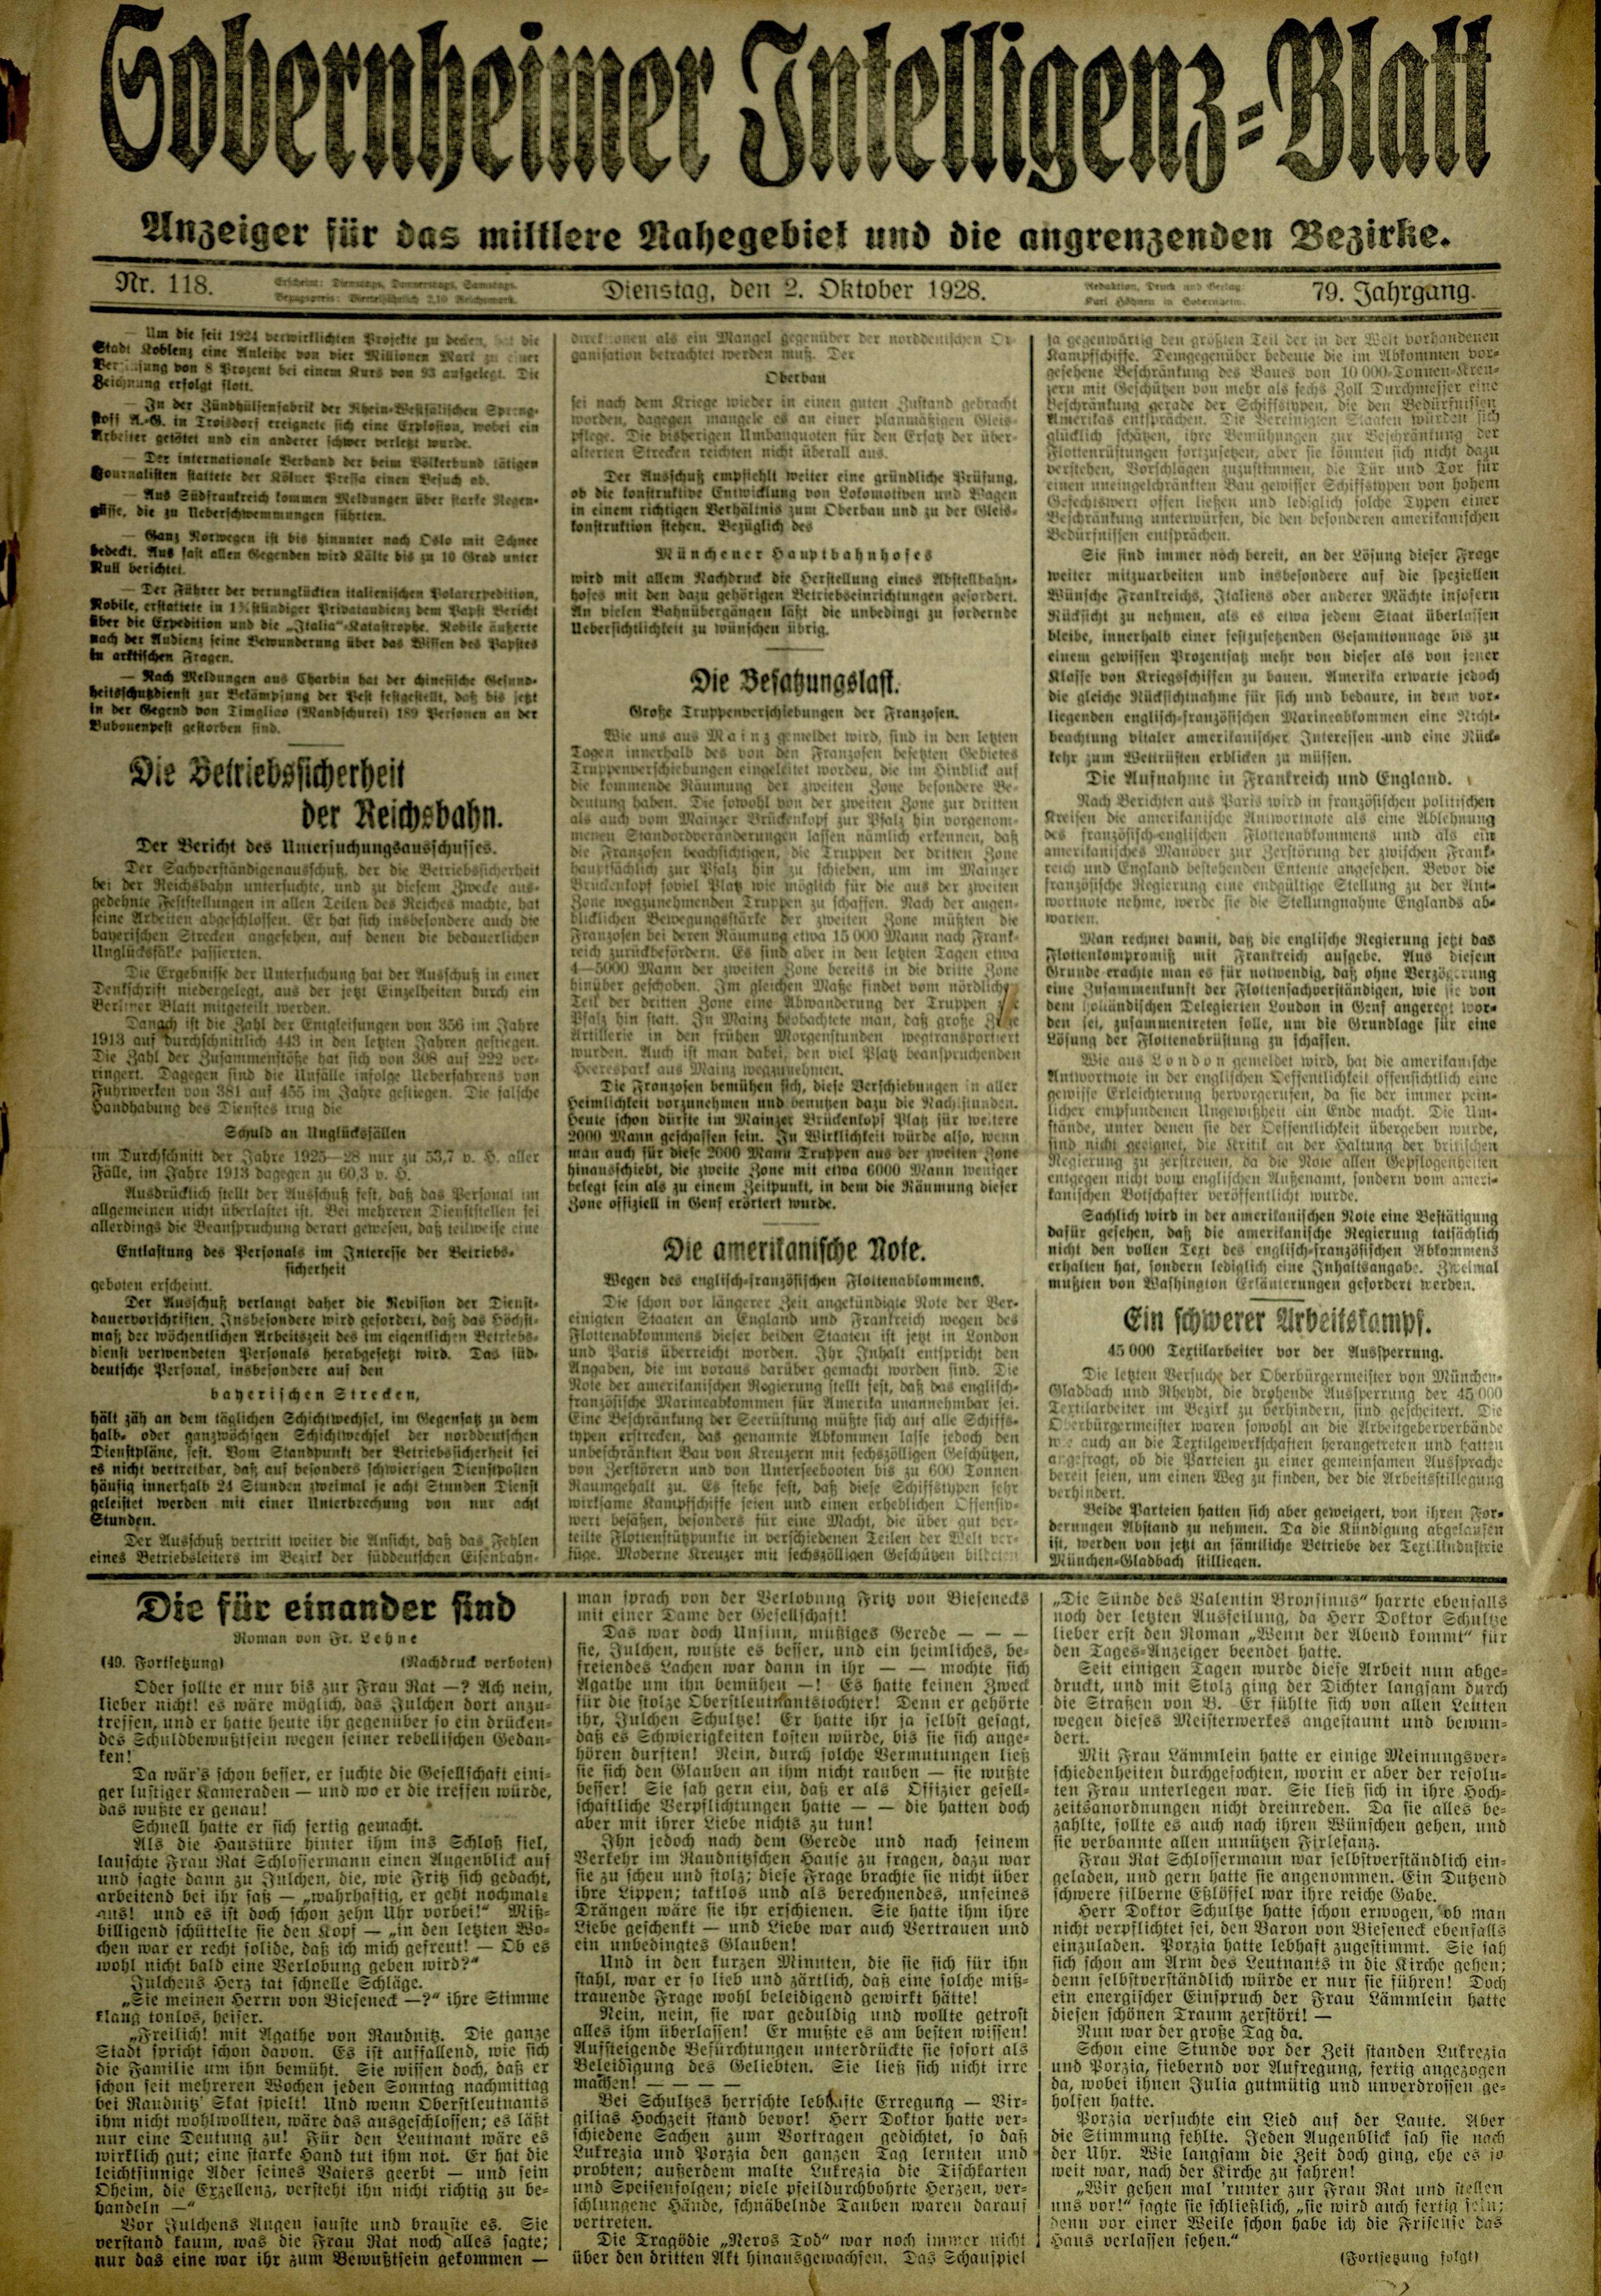 Zeitung: Sobernheimer Intelligenzblatt; Oktober 1928, Jg. 79 Nr. 118 (Heimatmuseum Bad Sobernheim CC BY-NC-SA)